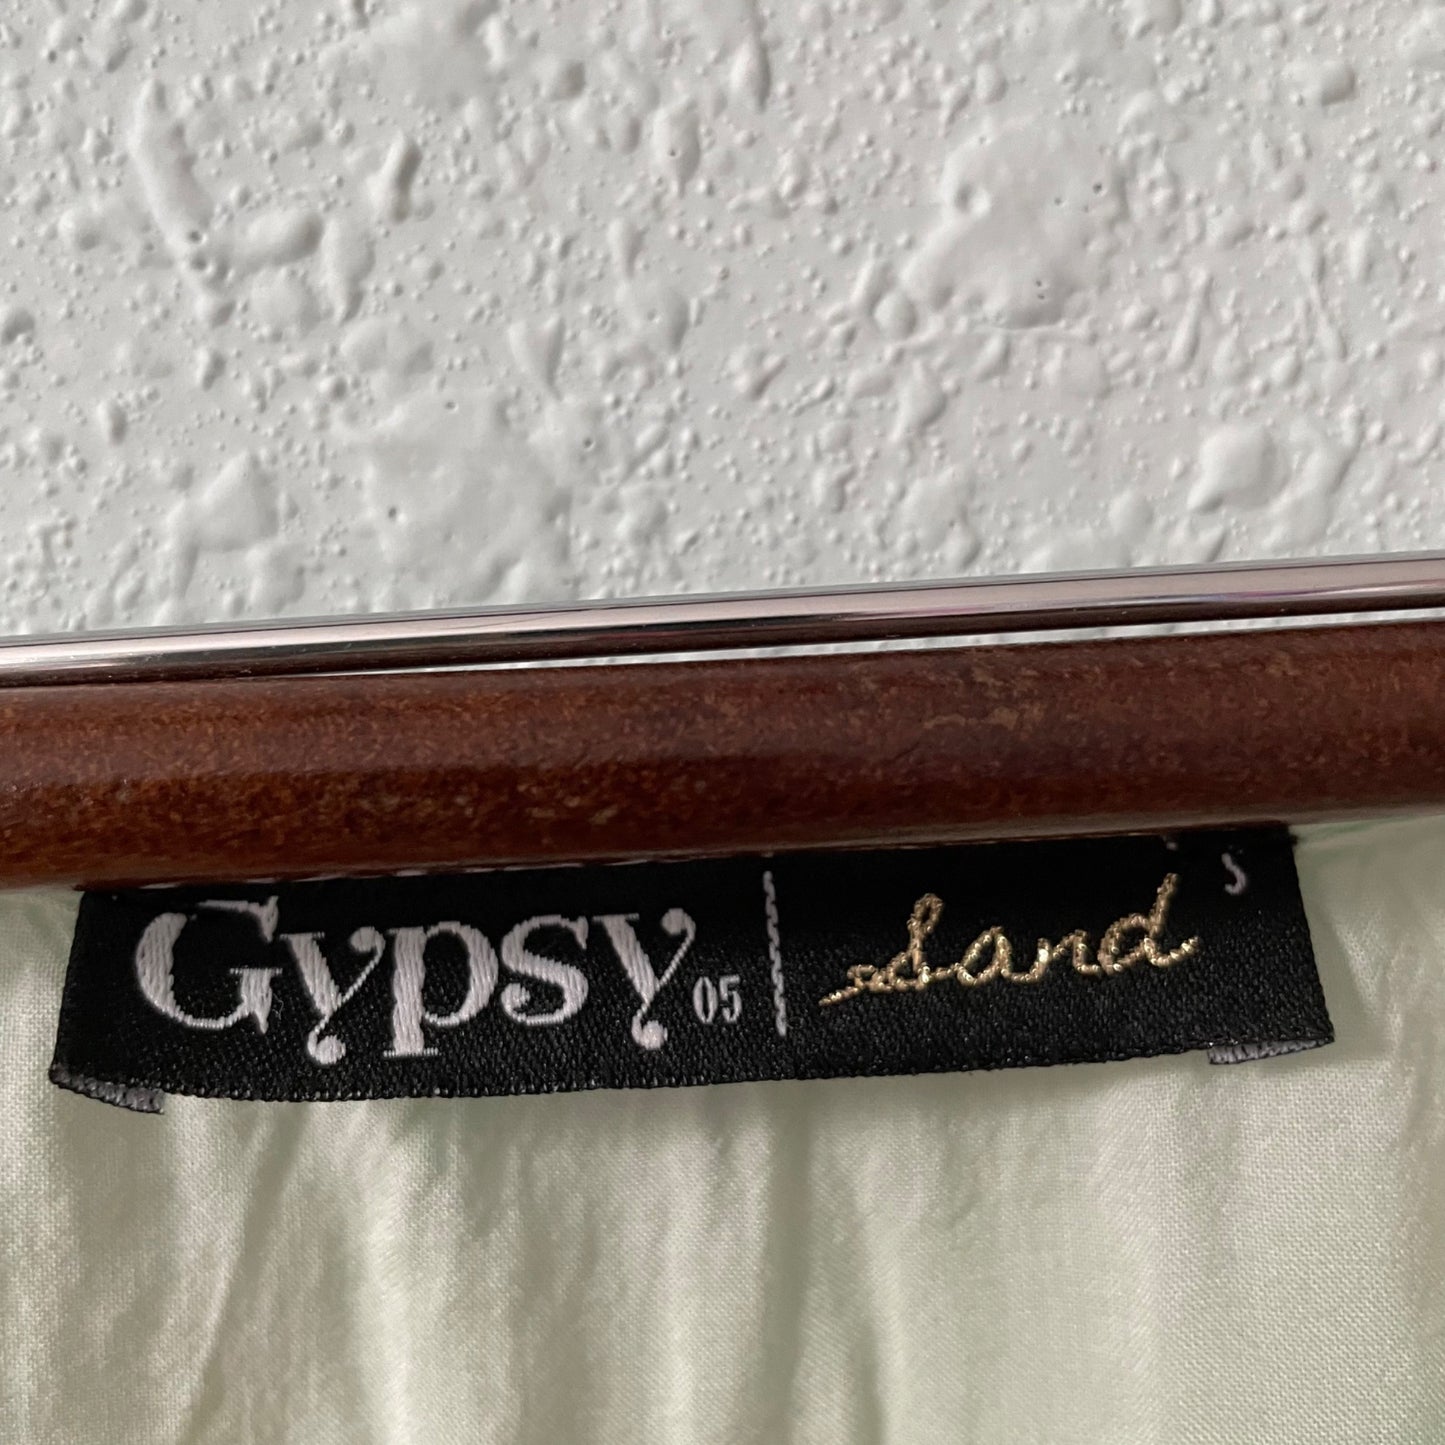 Gypsy 05 Sand Tie Dye Tunic Swim Cover Women's Size Small Eyelet Lace Trim